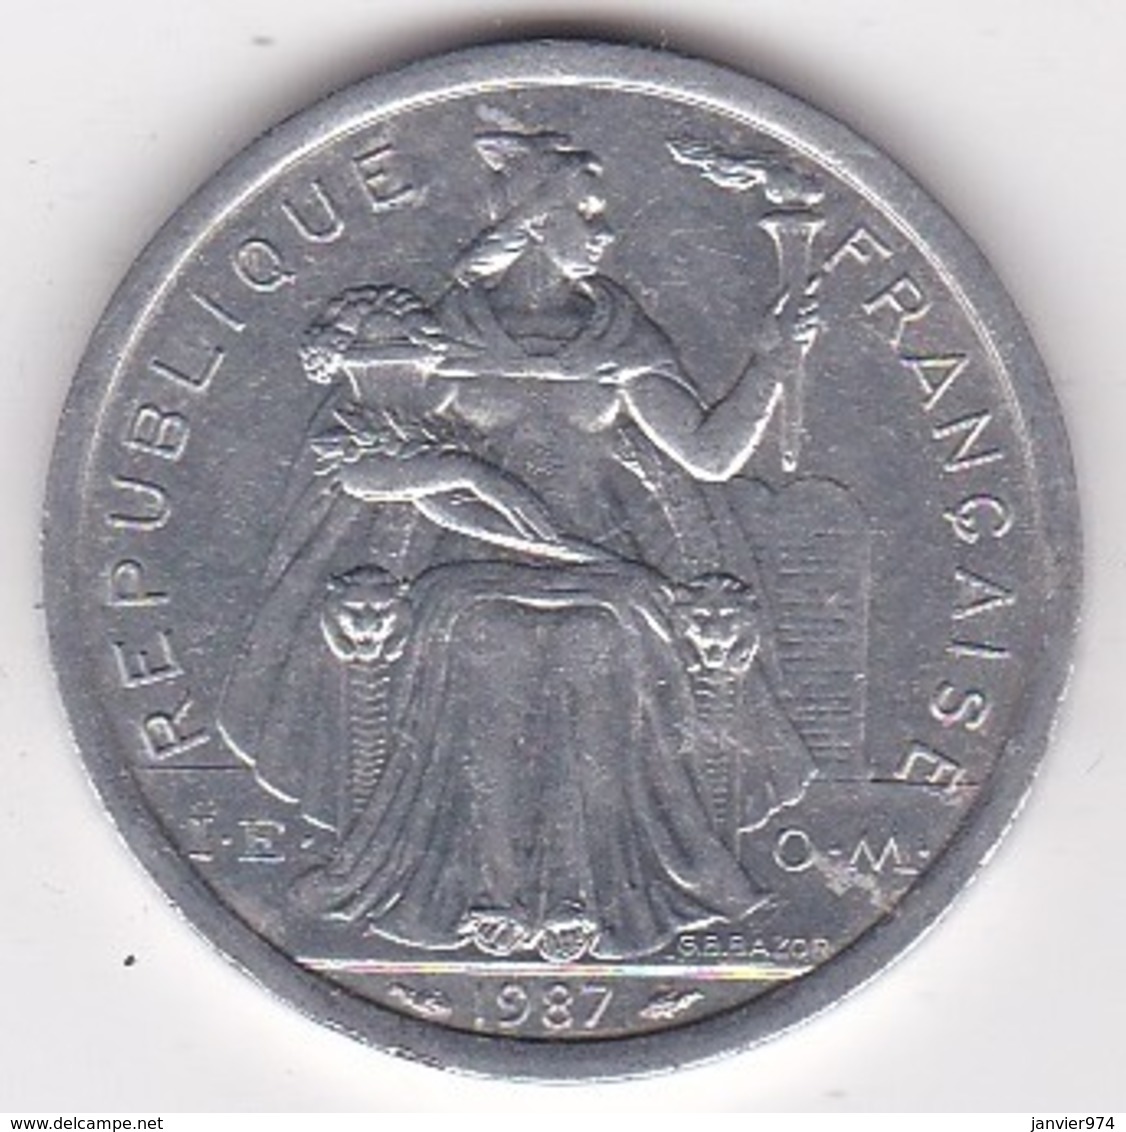 Nouvelle-Calédonie . 2 Francs 1987. Aluminium. - Nieuw-Caledonië